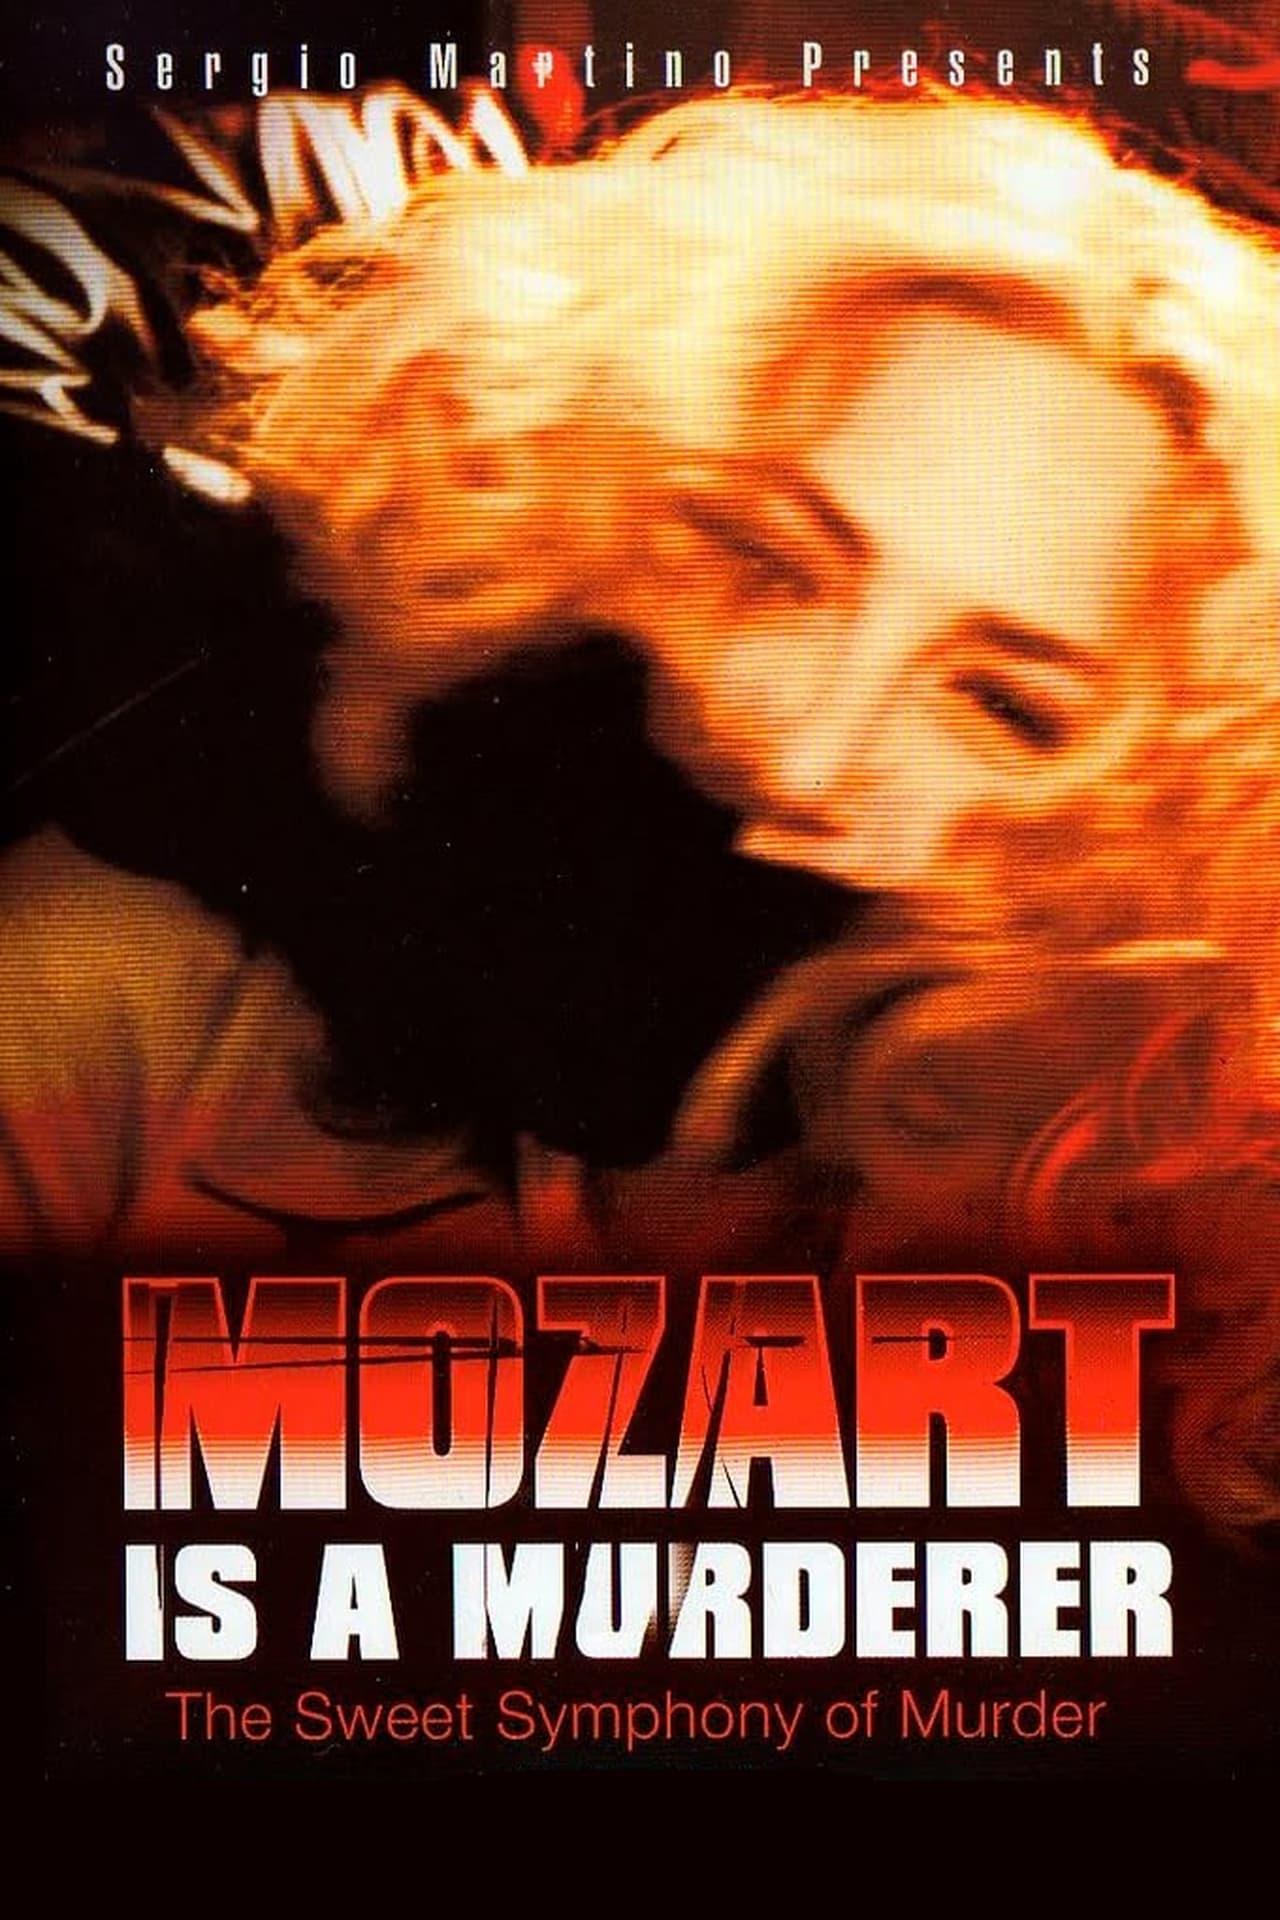 Mozart Is a Murderer poster